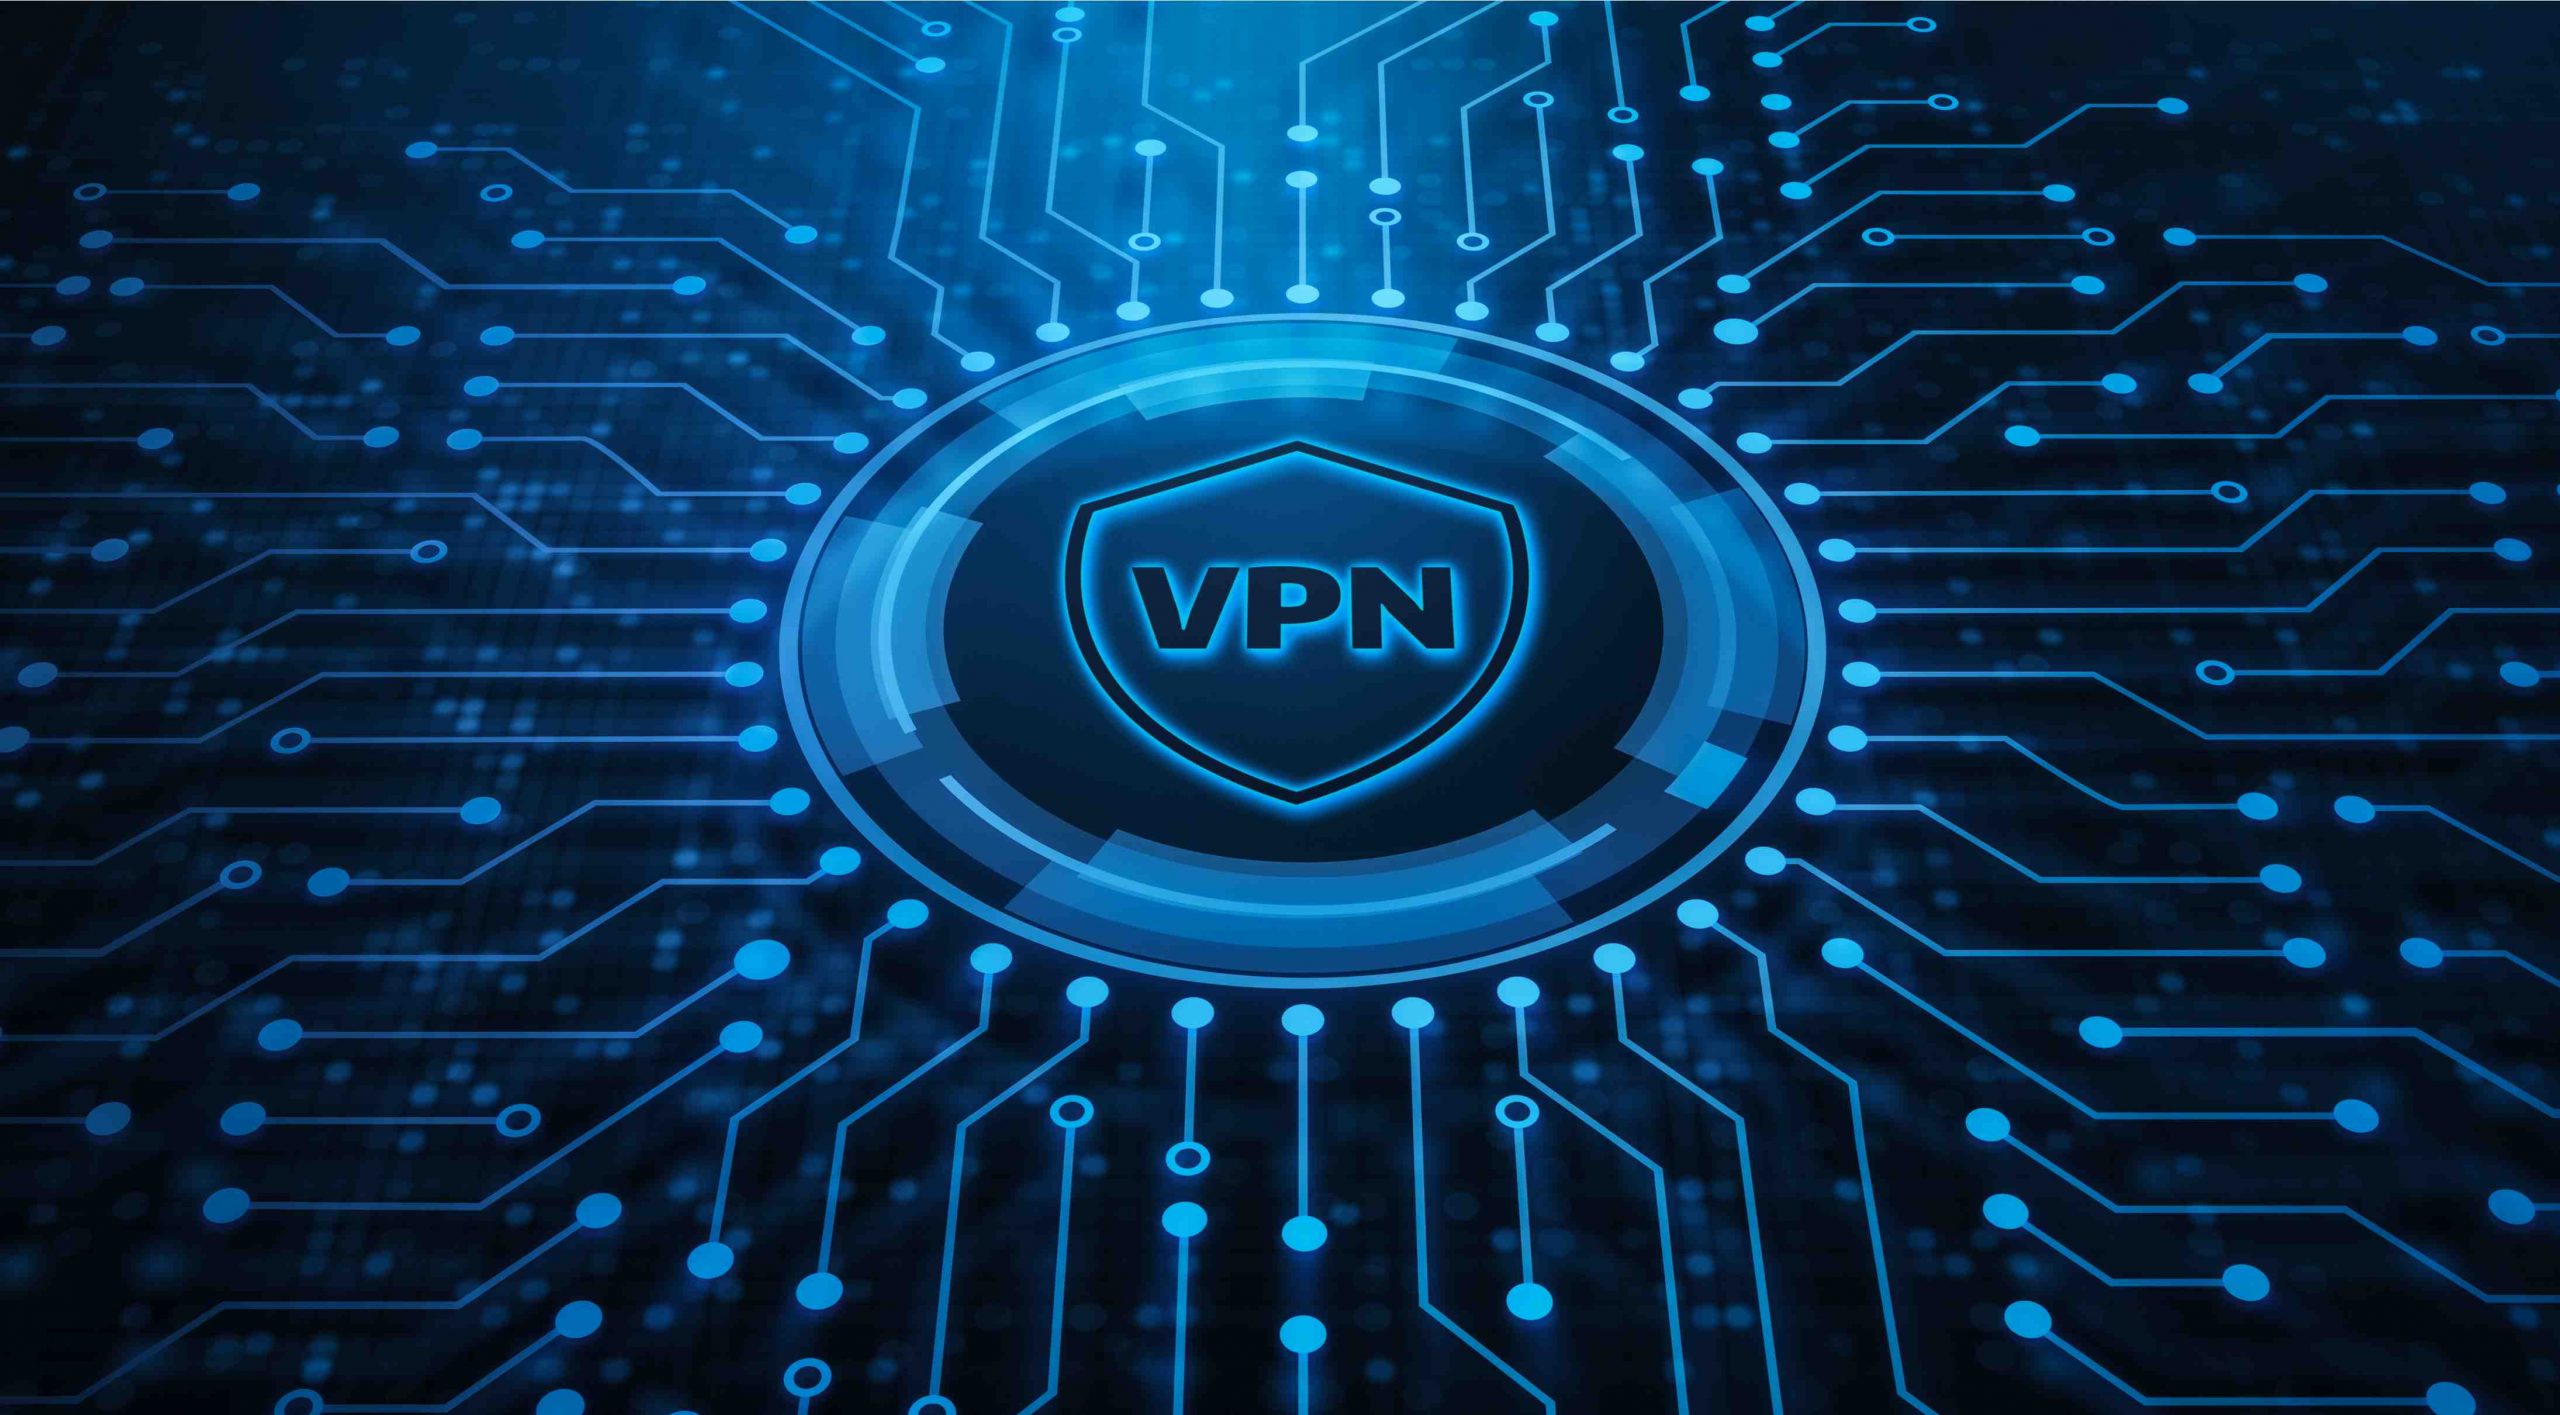 Is a double VPN better?